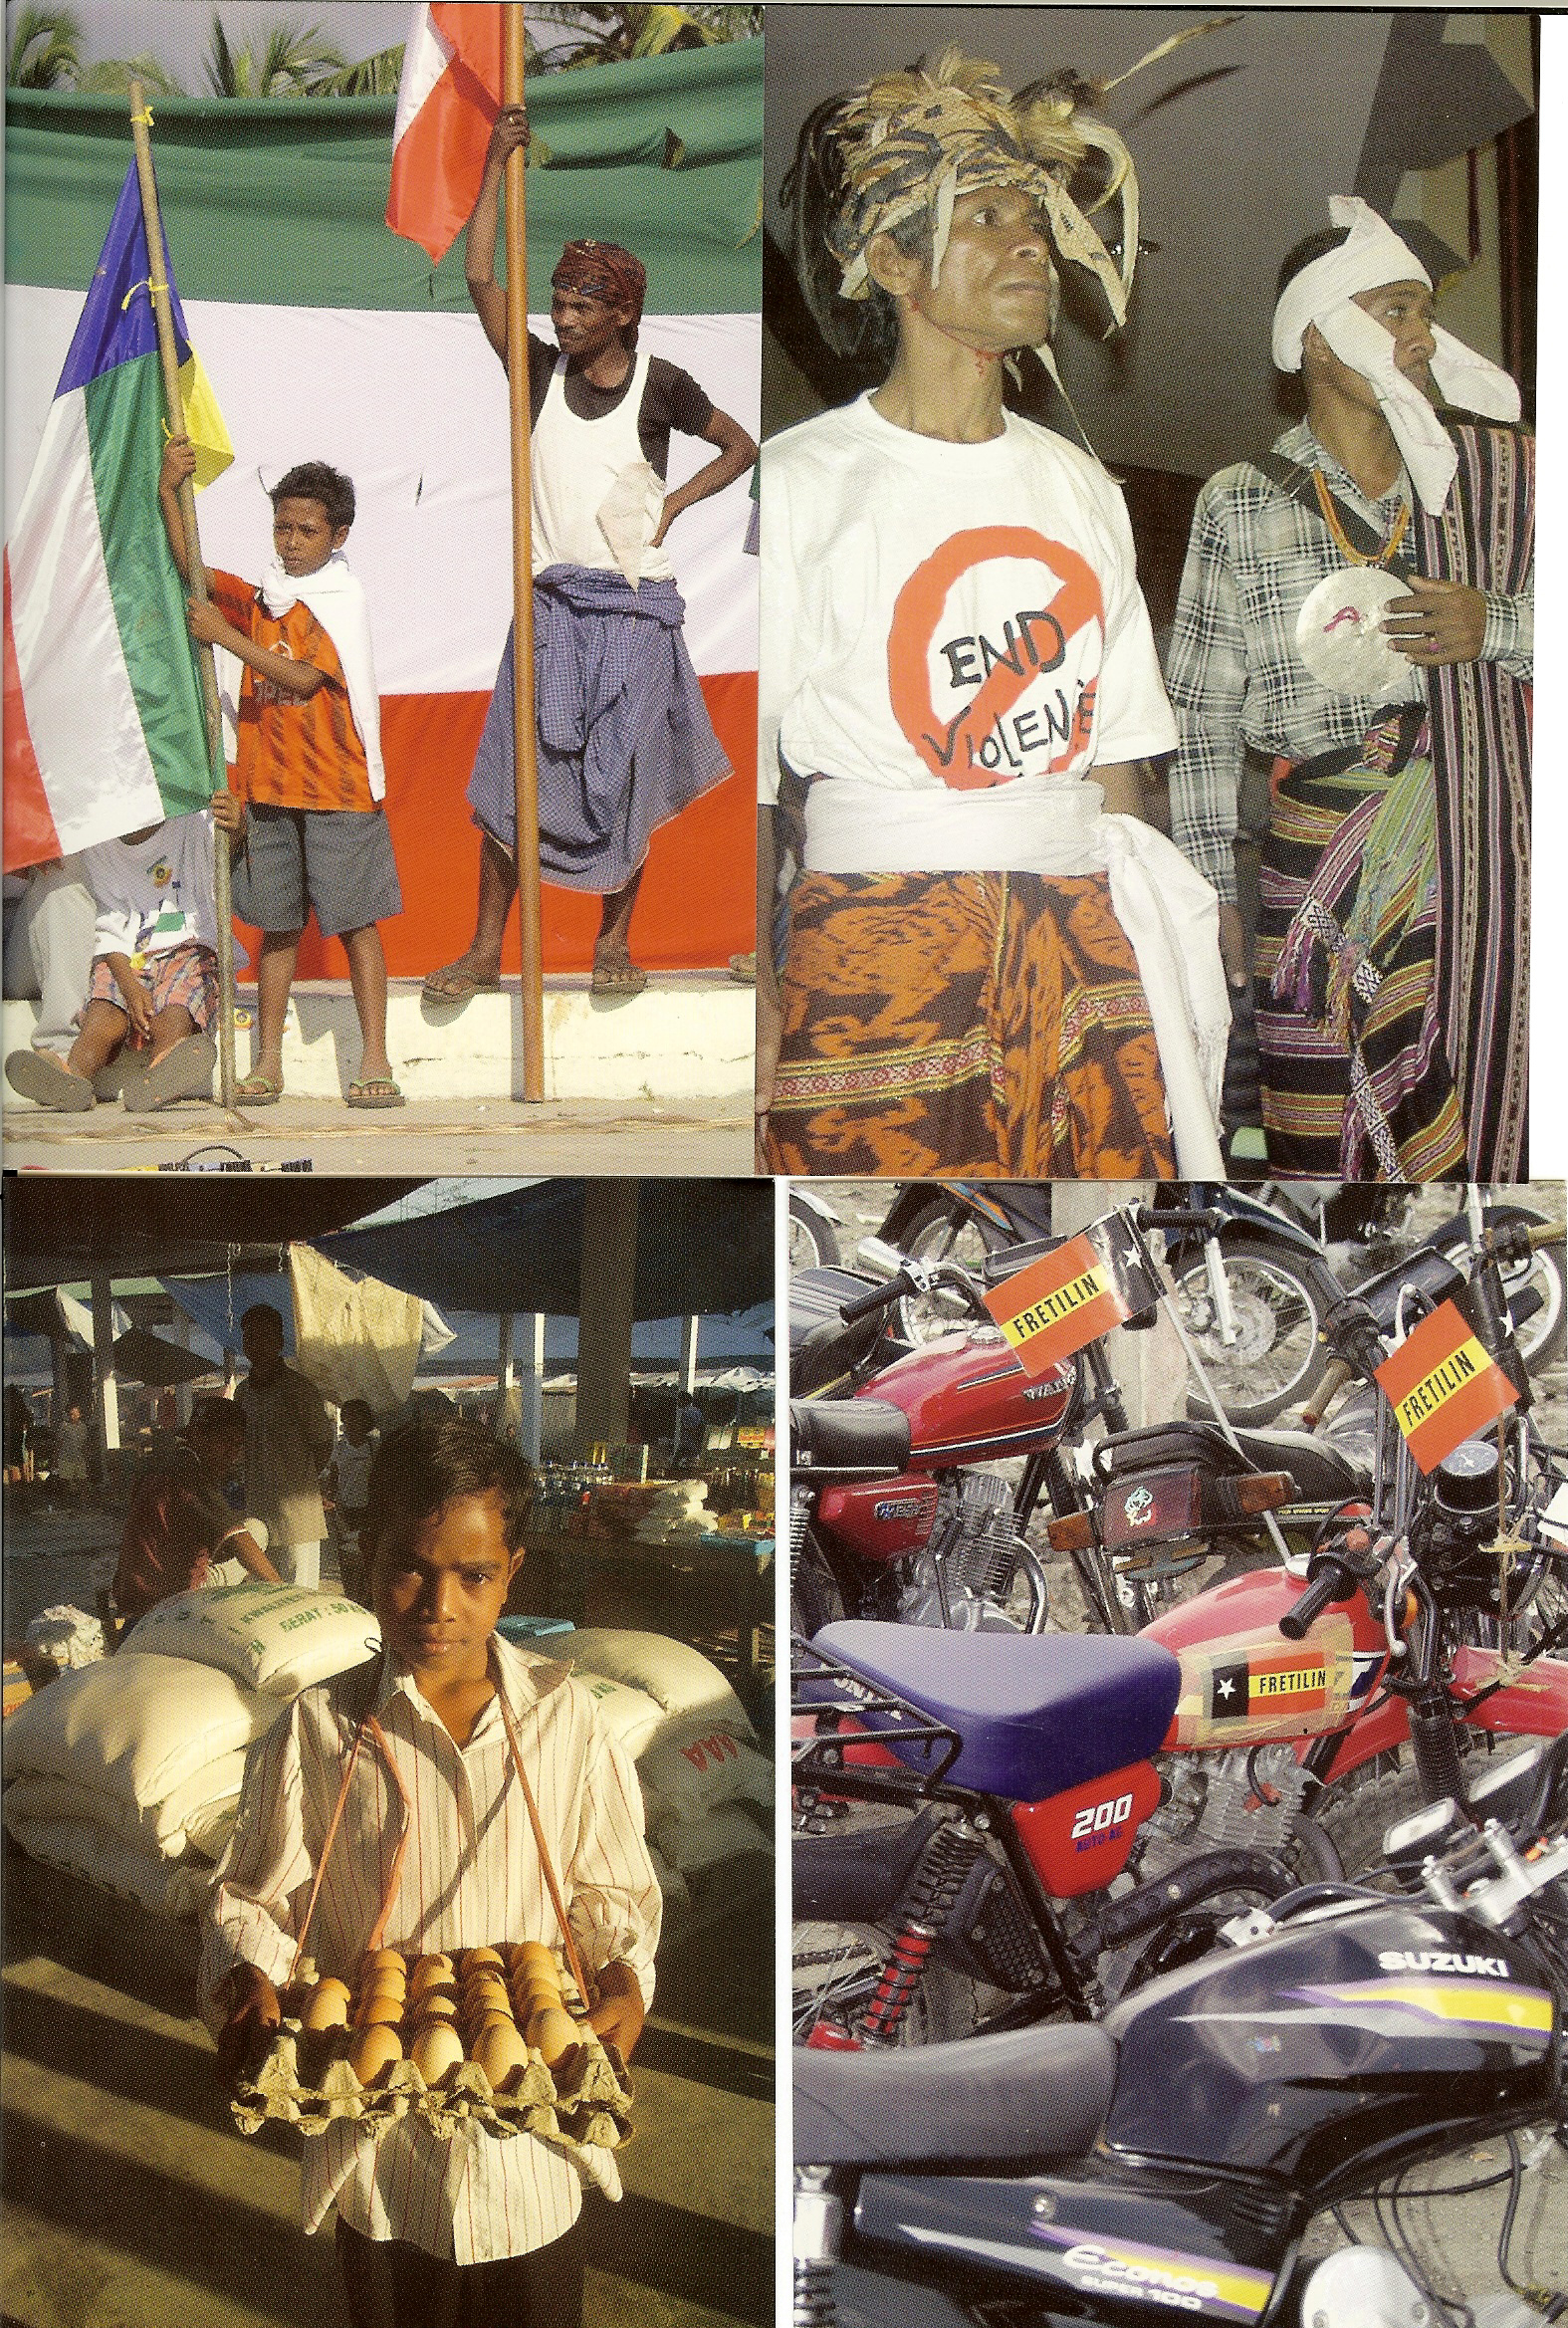 Fyra vykort: barn med flaggor, byhövdningar vid invigningen av den konstituerande församlingen 2001, äggförsäljare, mopeder med Fretilinflaggor